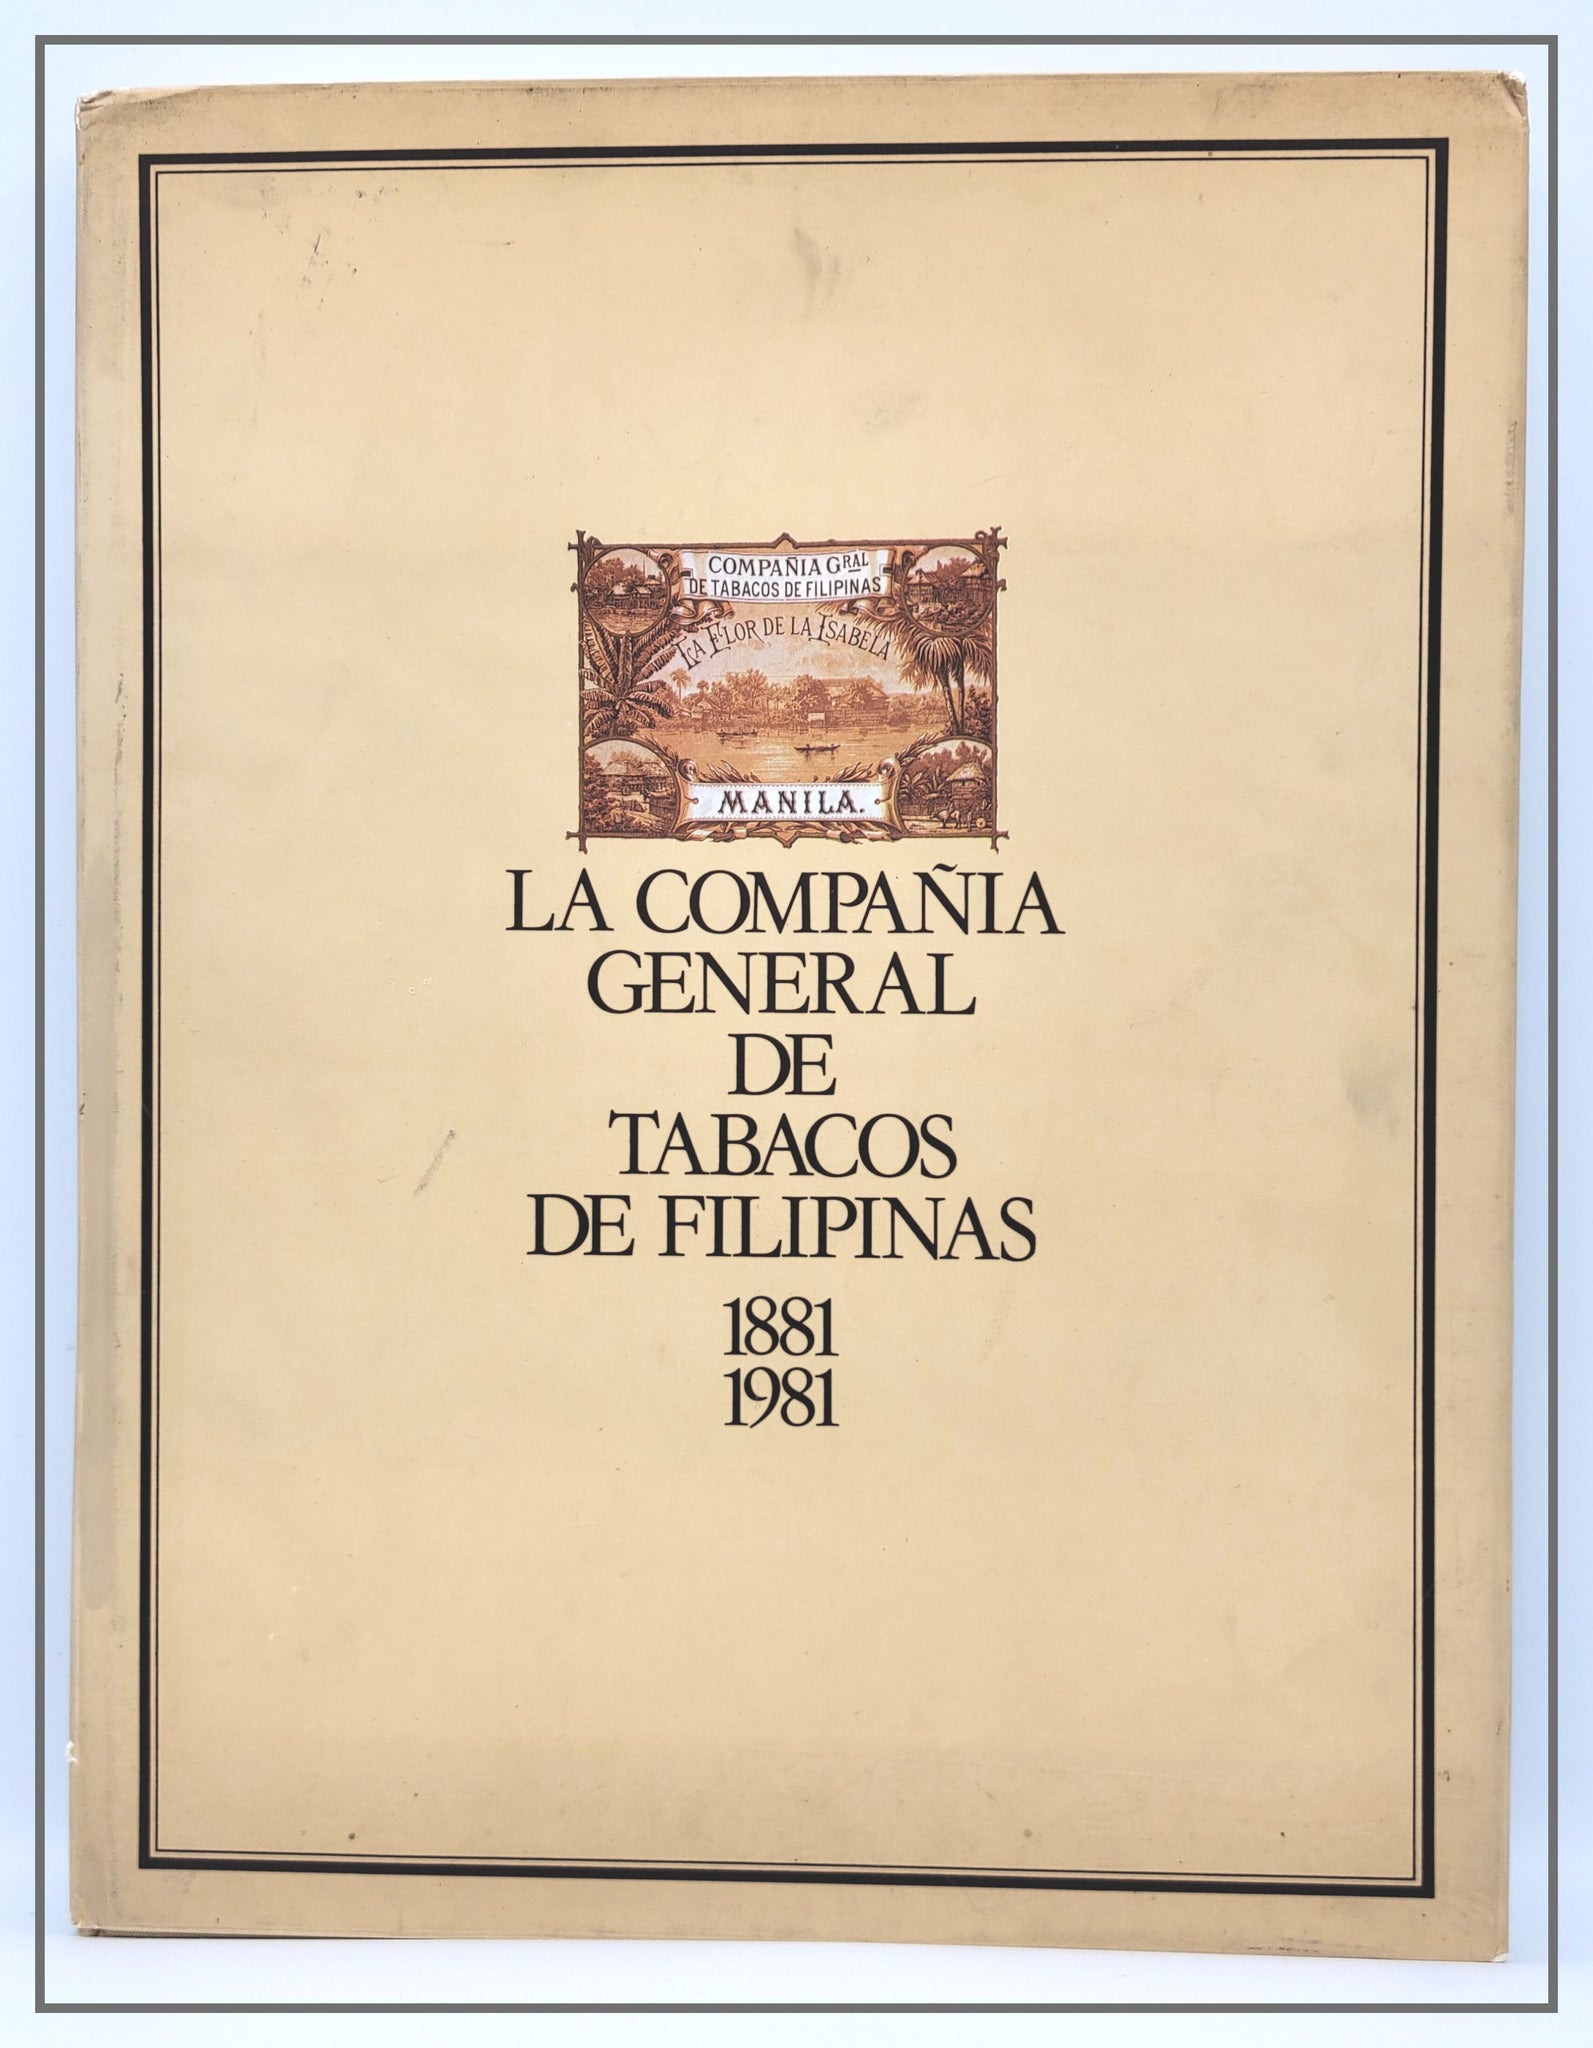 La Compania General De Tabacos De Filipinas 1881 - 1981 by Emili Giralt Raventos